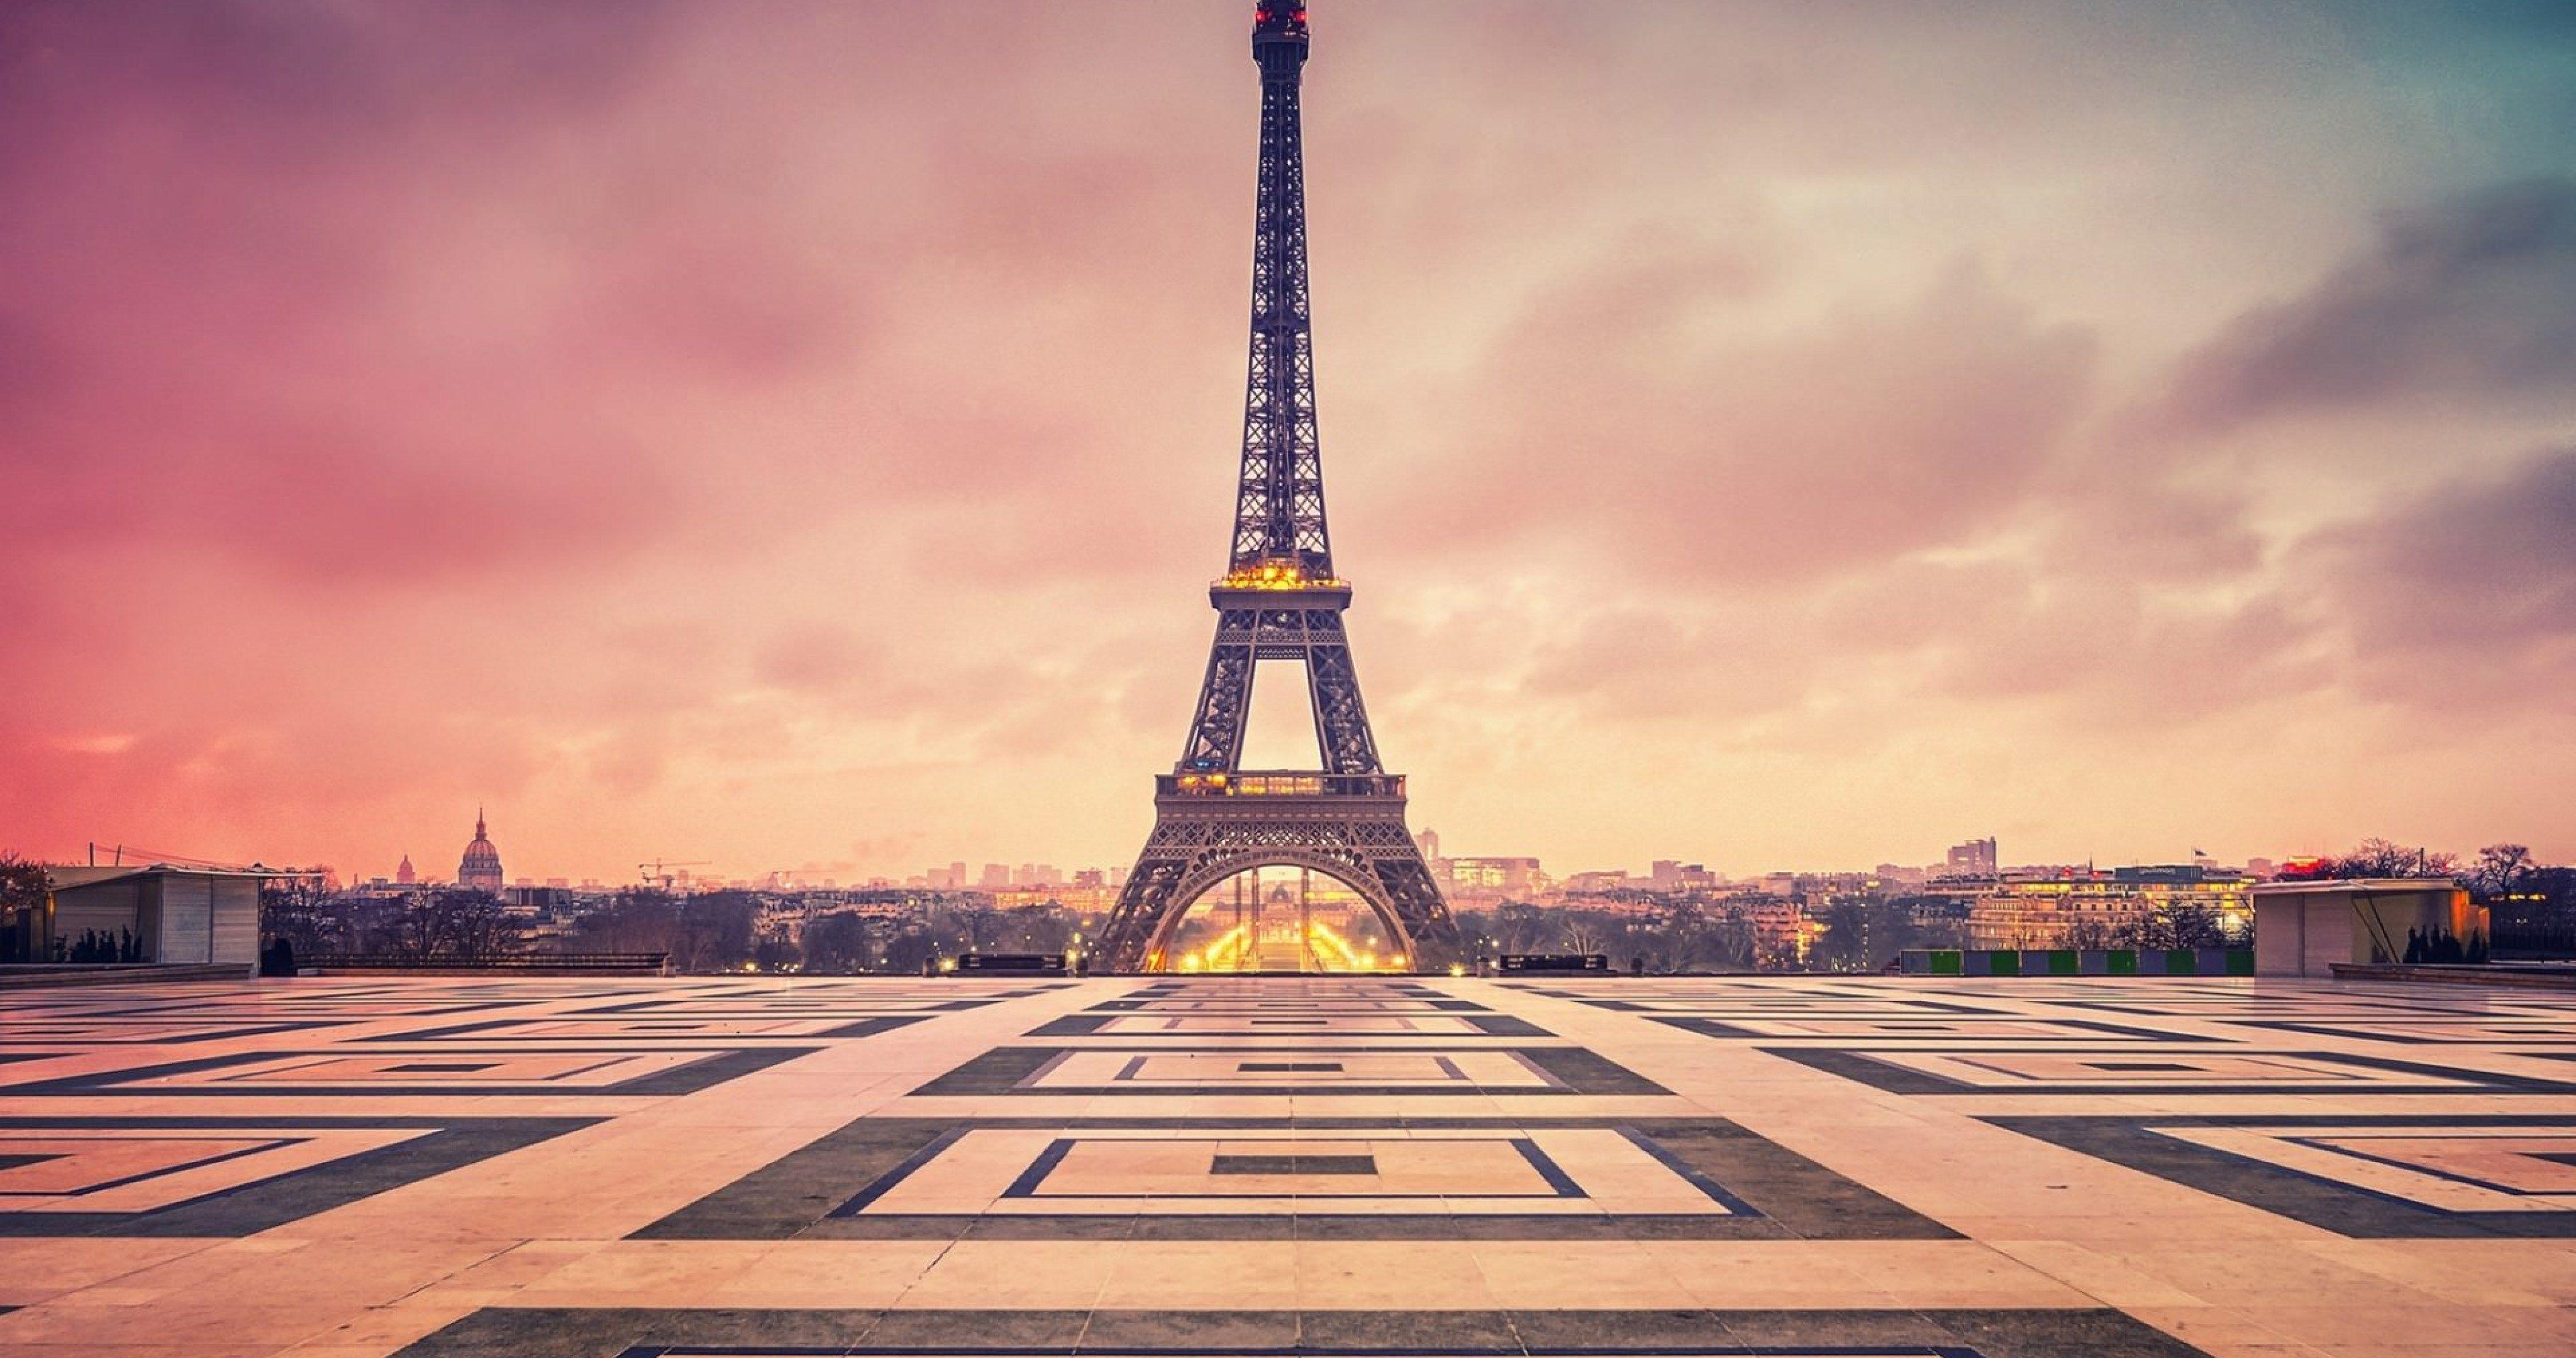 4096x2160 Paris tháp Eiffel những đám mây hoàng hôn 4k cực HD hình nền